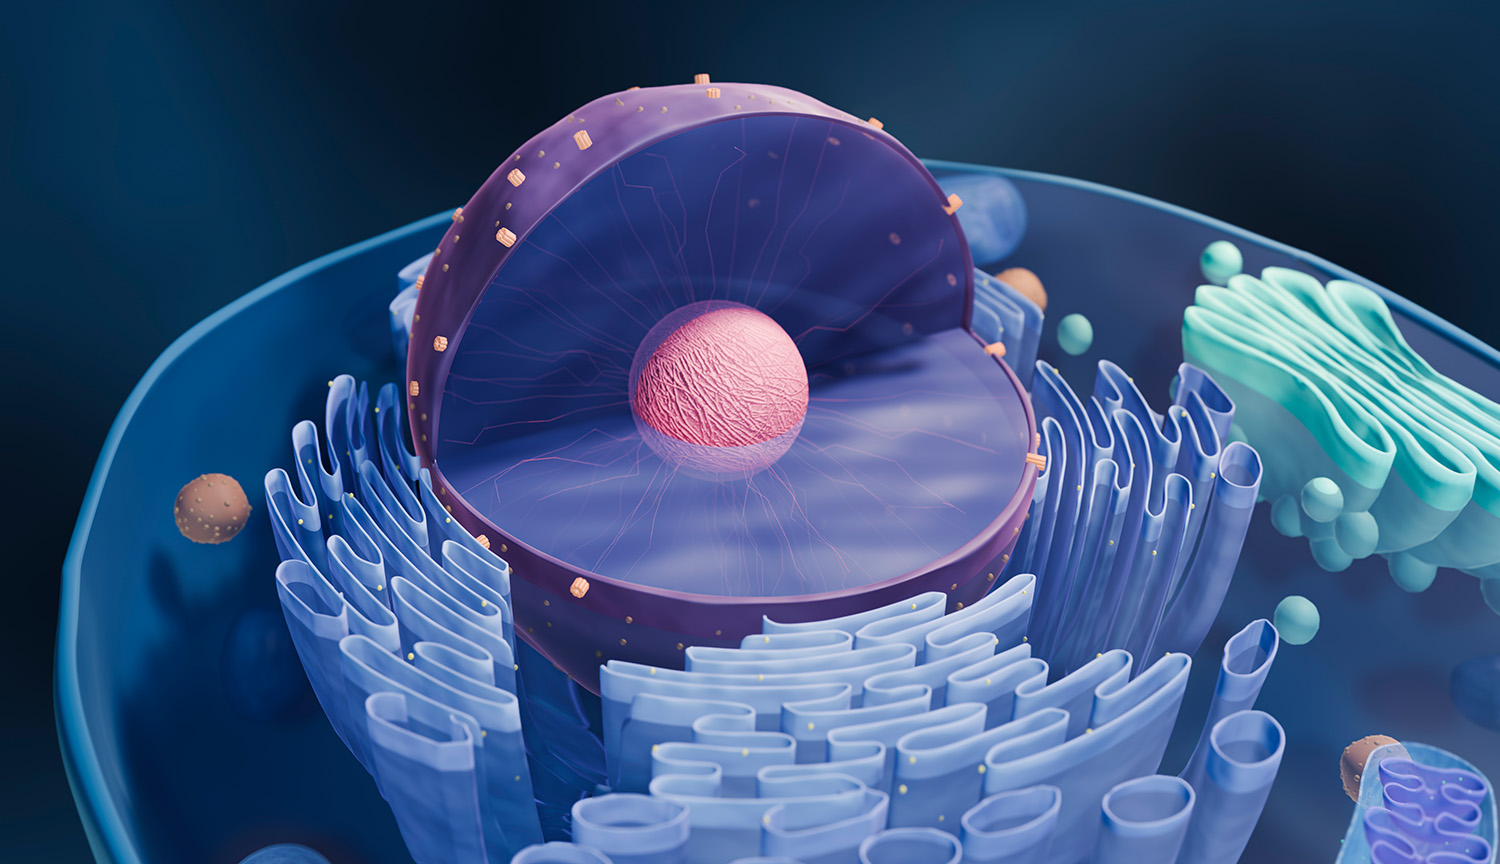 Ilustración conceptual de una célula eucariota abierta a la mitad para mostrar las estructuras internas.